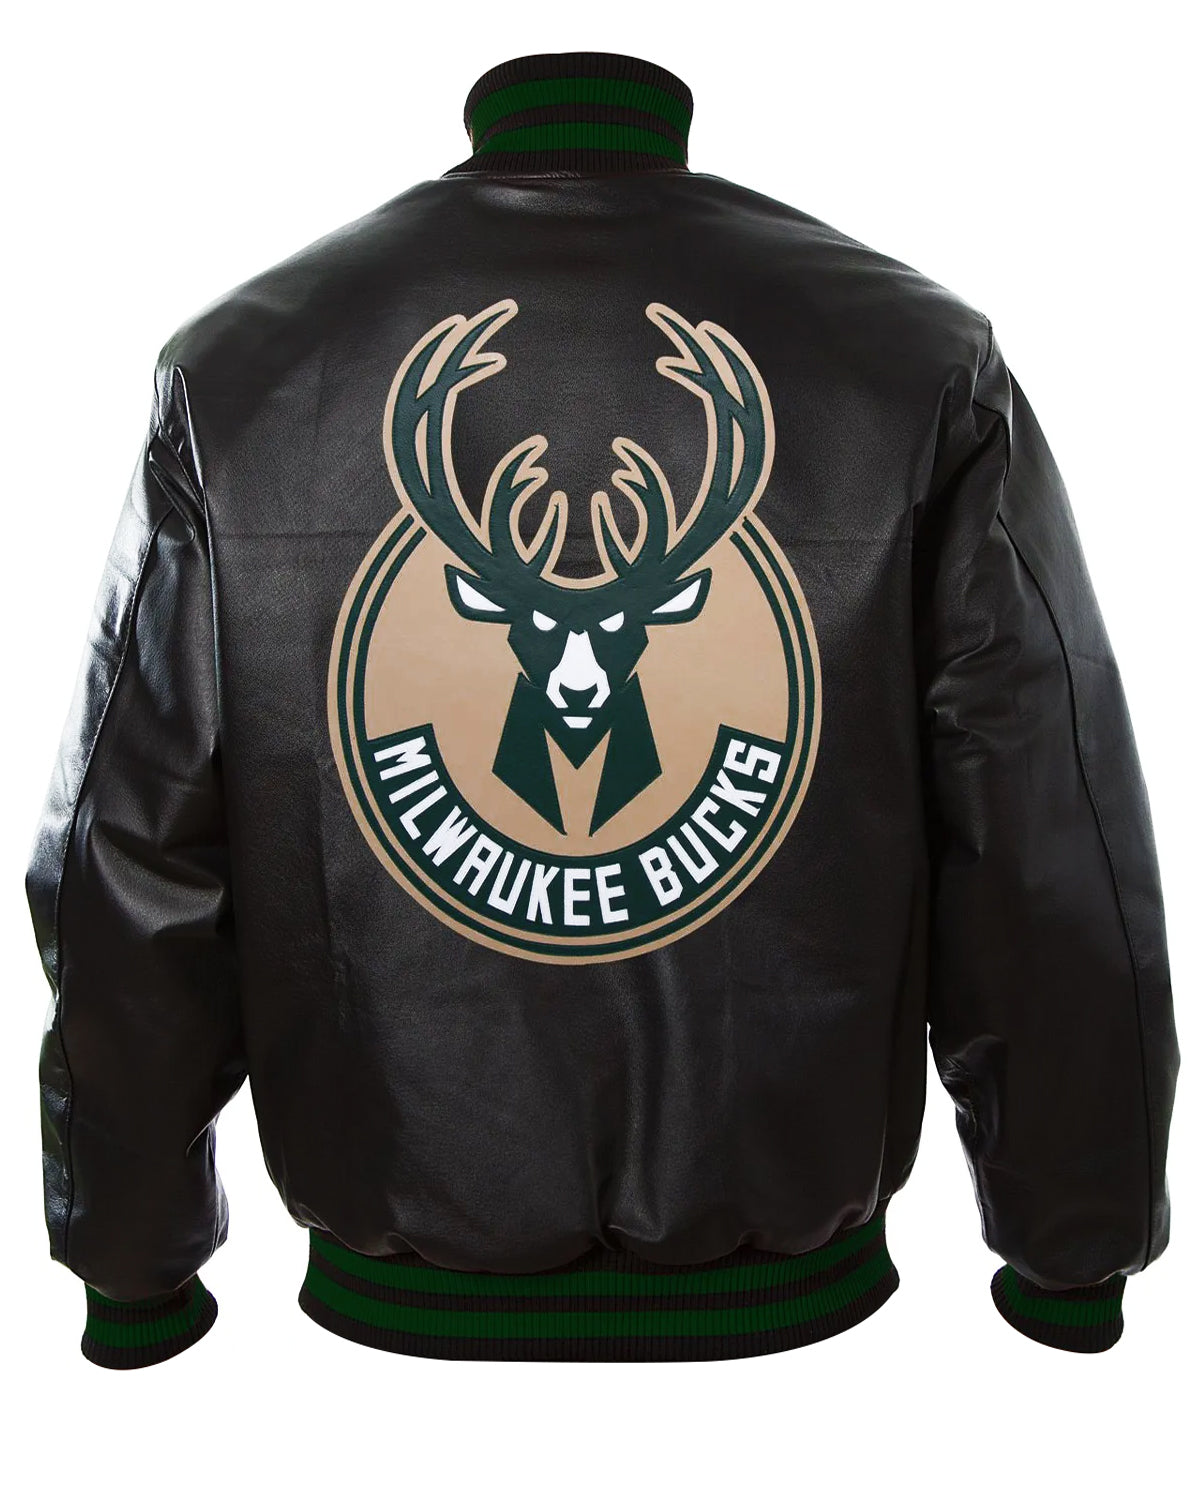 Basketball Team Milwaukee Bucks Letterman Black Leather Jacket